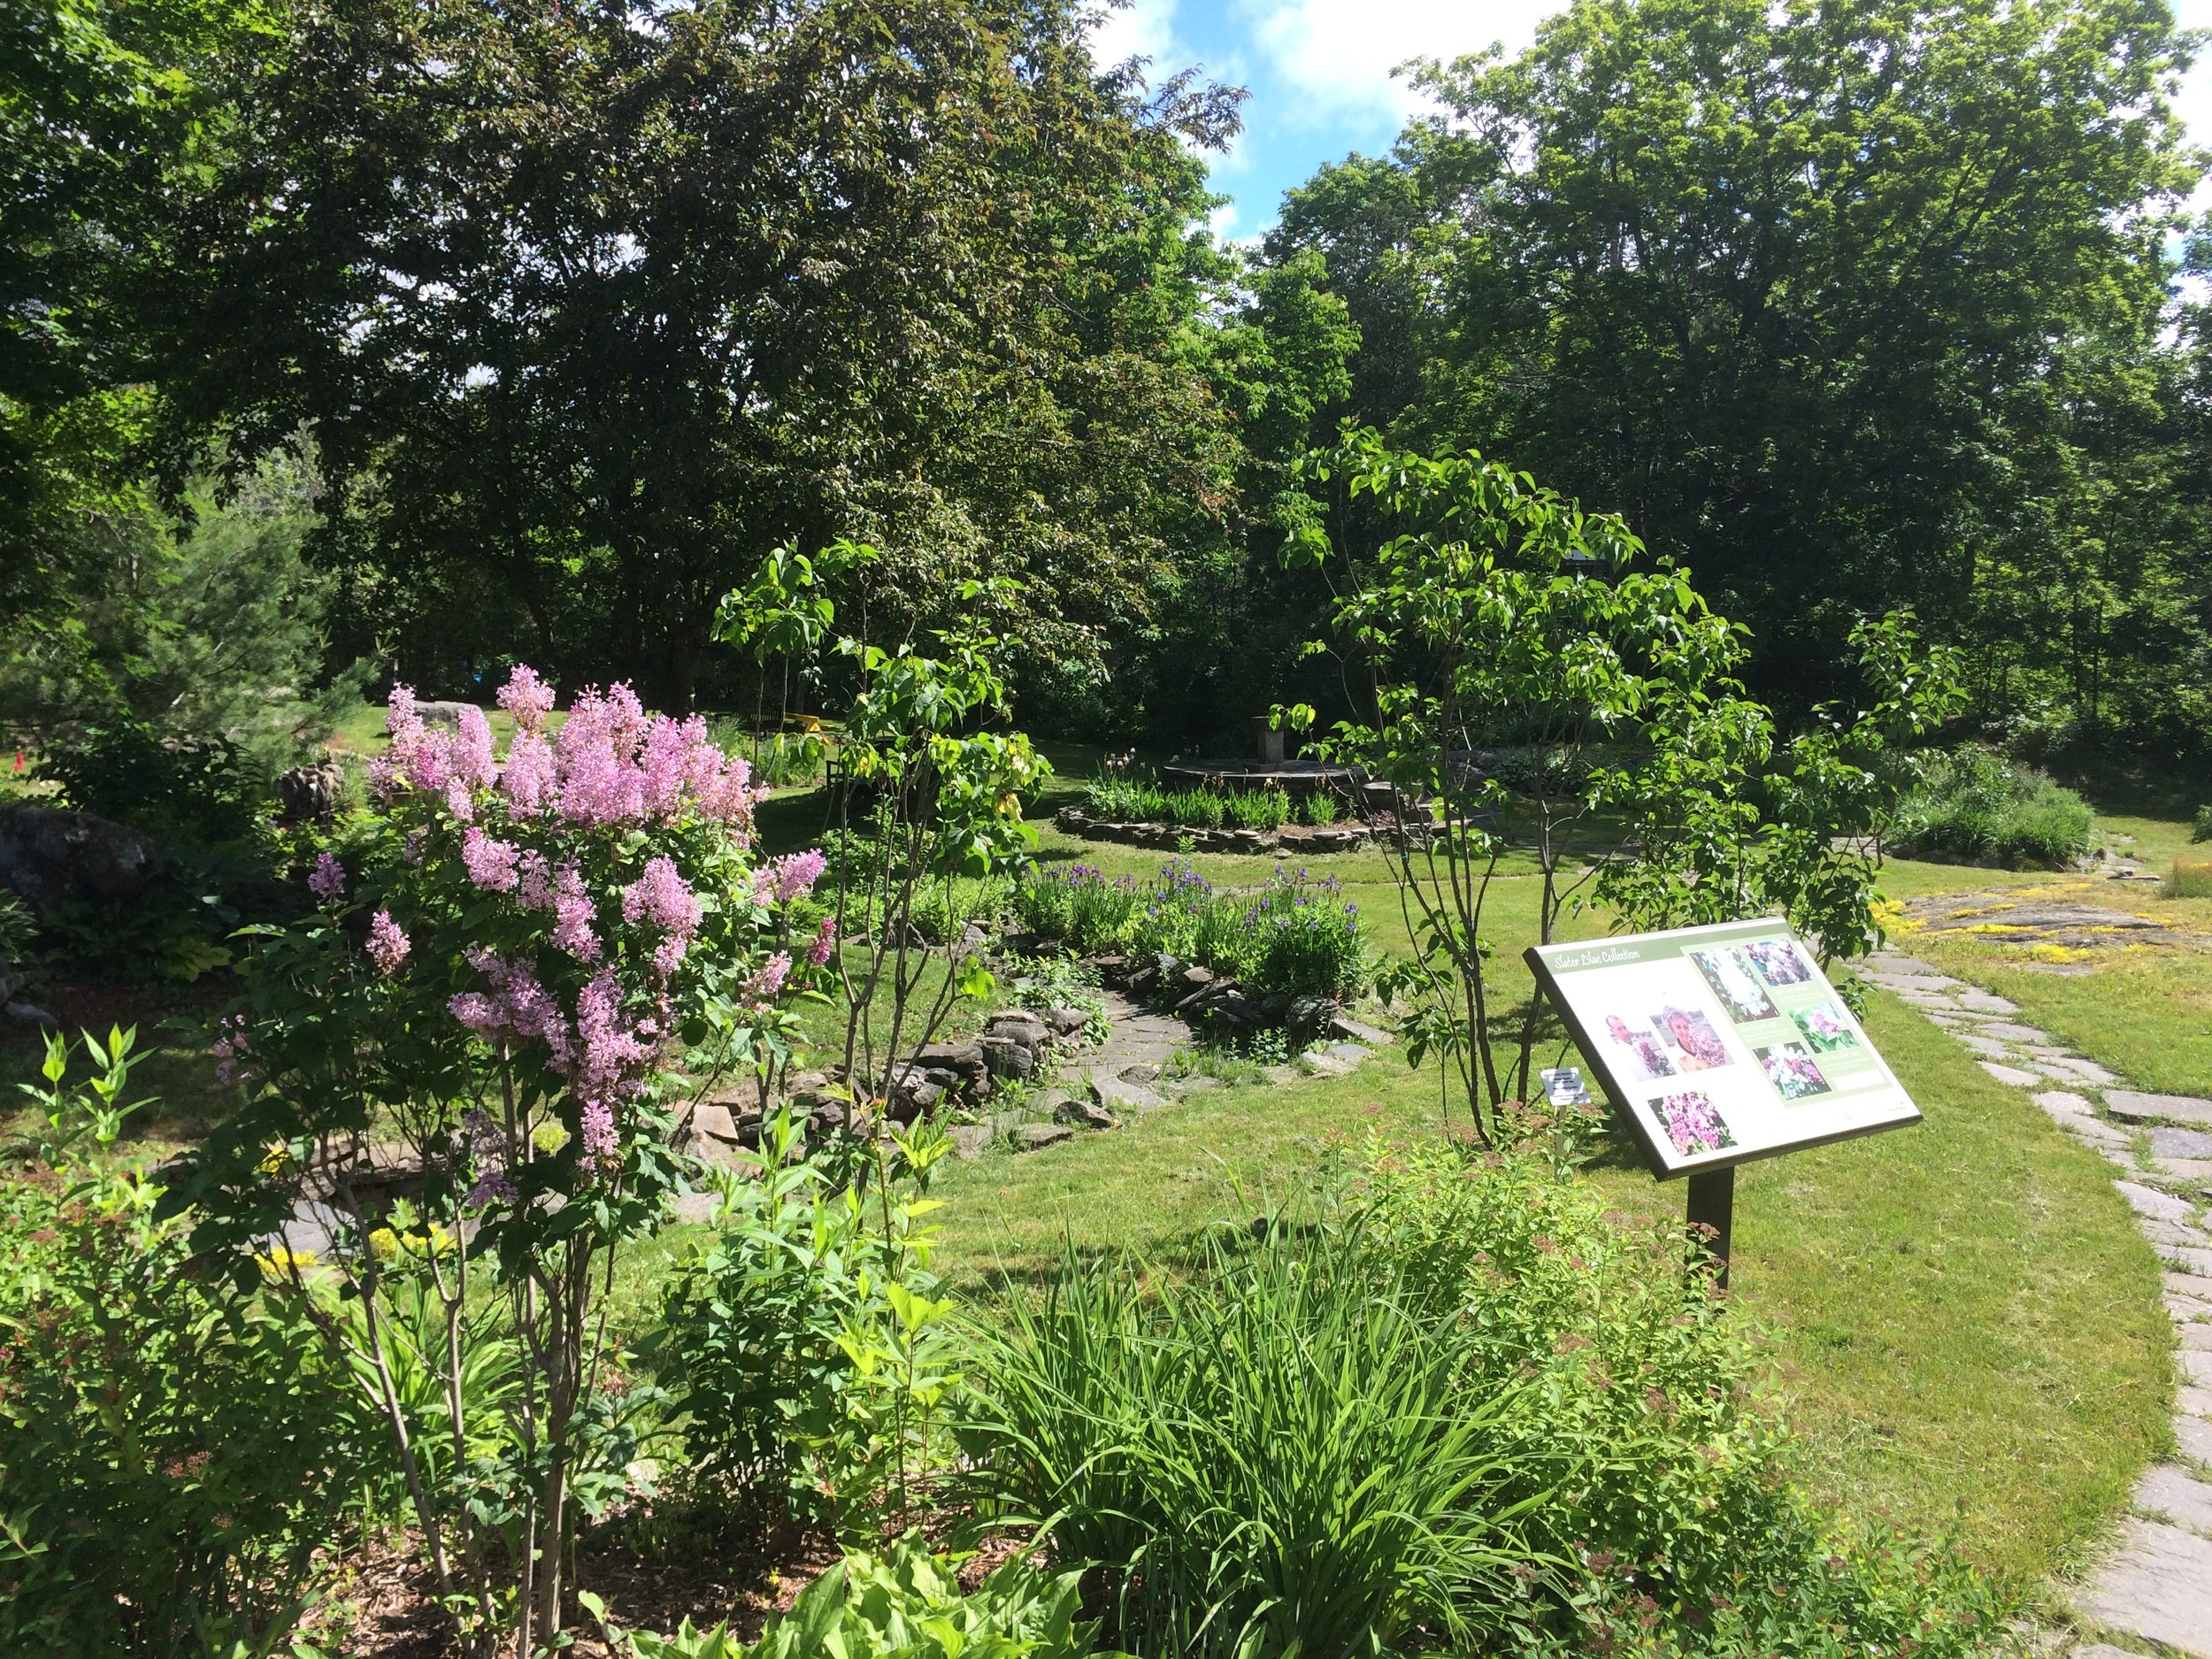 Tower Hill Heritage Garden Activities